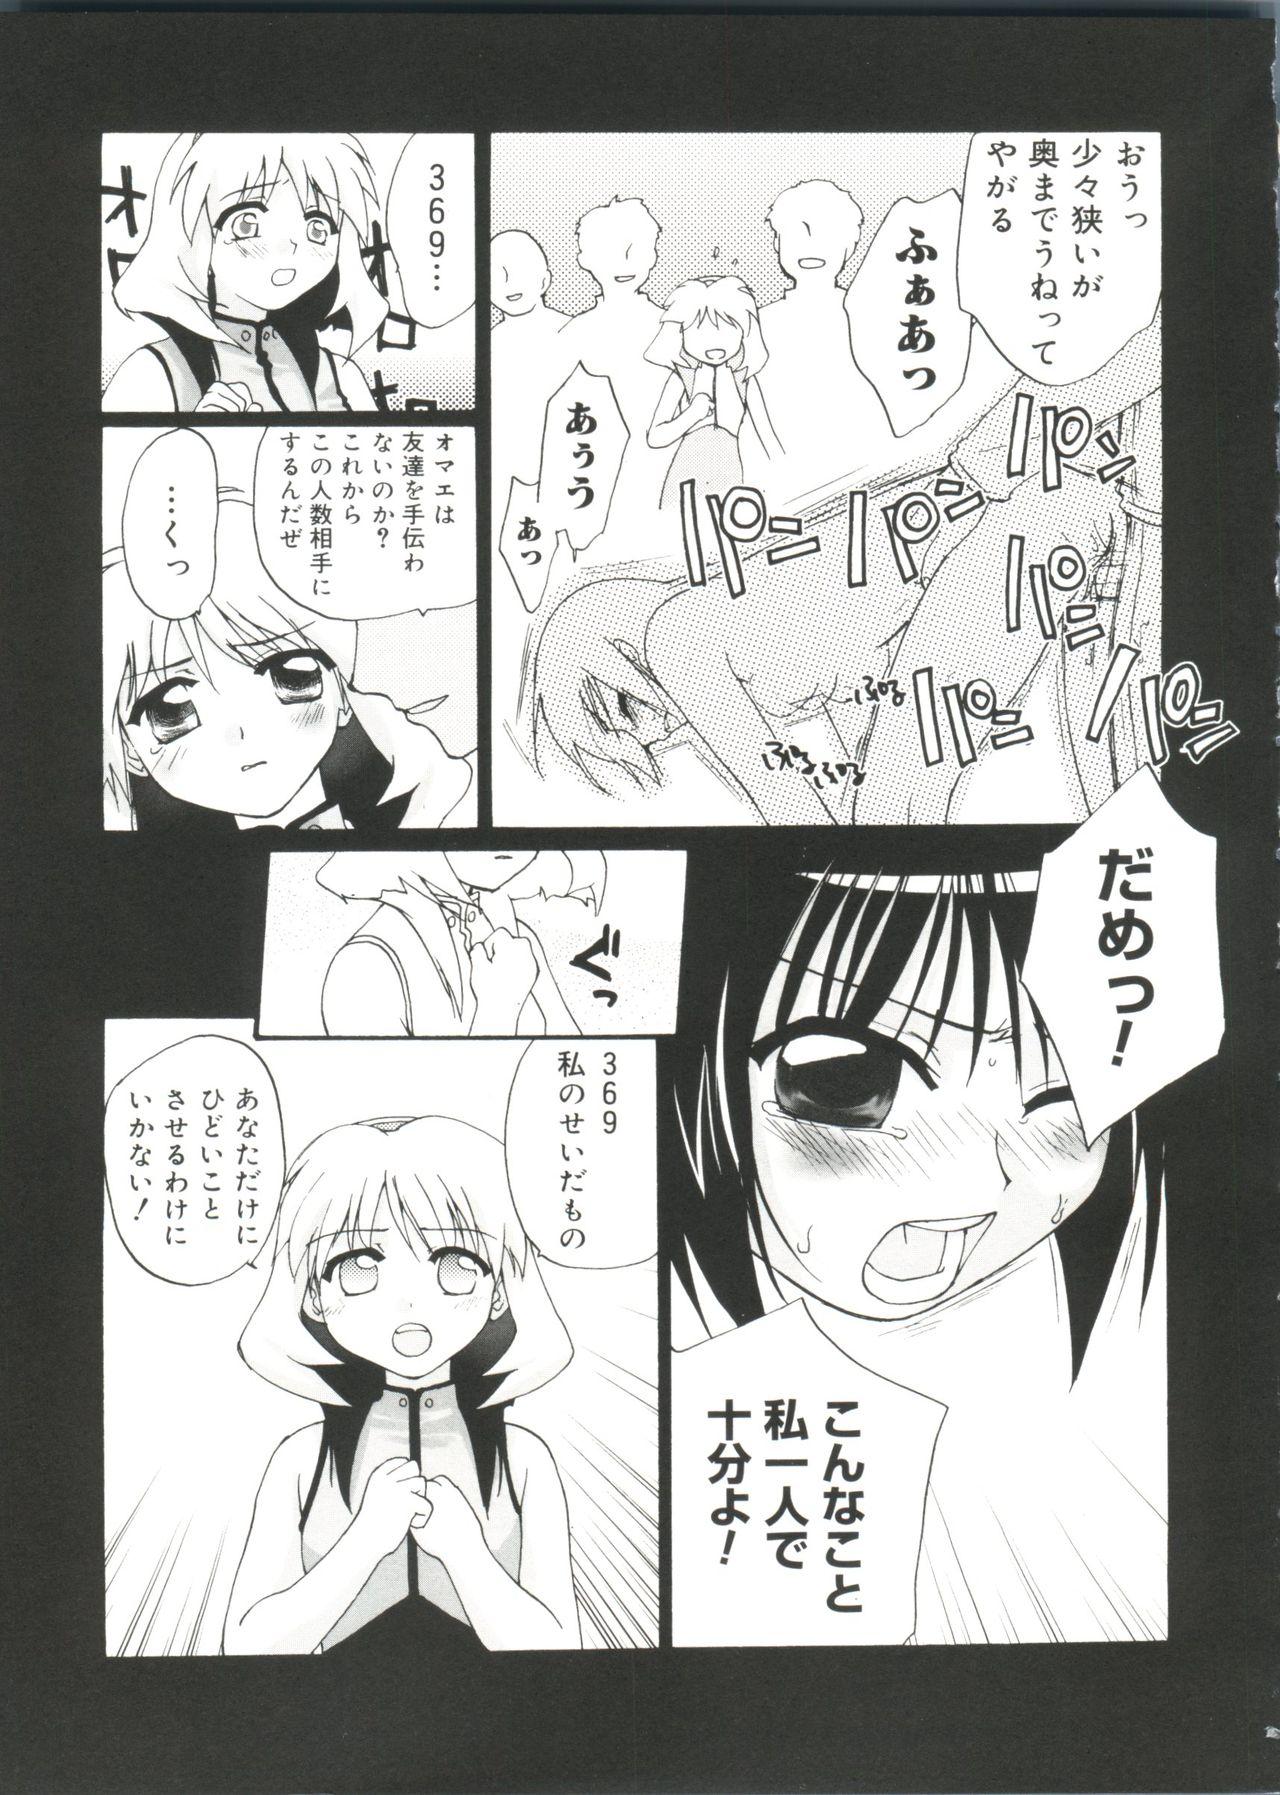 Pick Up Love Chara Zensho Vol. 2 - Cardcaptor sakura Sister princess Chobits Tokyo mew mew Mahoromatic Jerkoff - Page 8